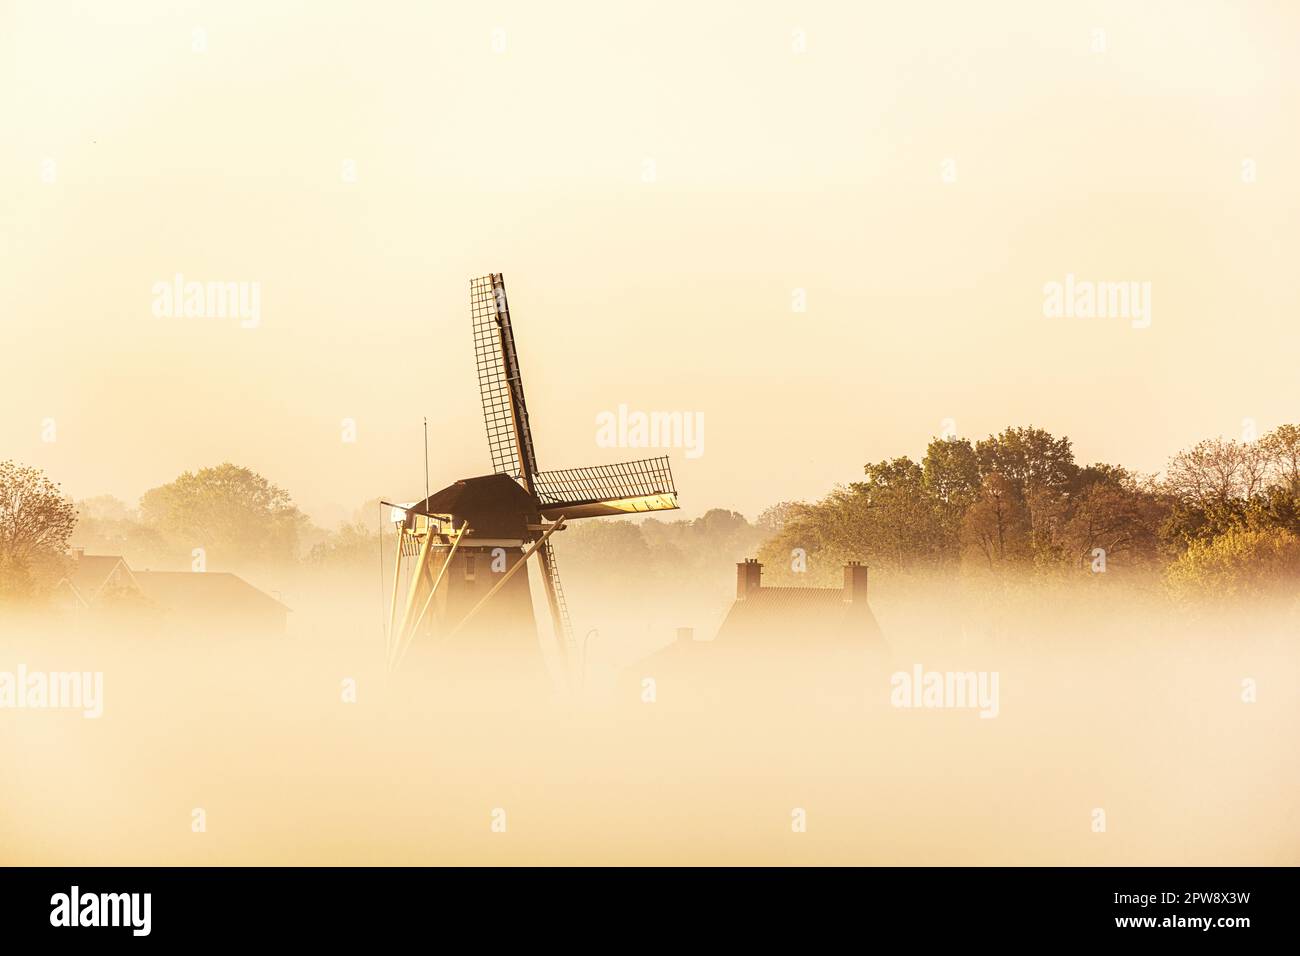 Pays-Bas, Nigtevecht. Moulin le long de la rivière Vecht, lever du soleil. Brume. Banque D'Images